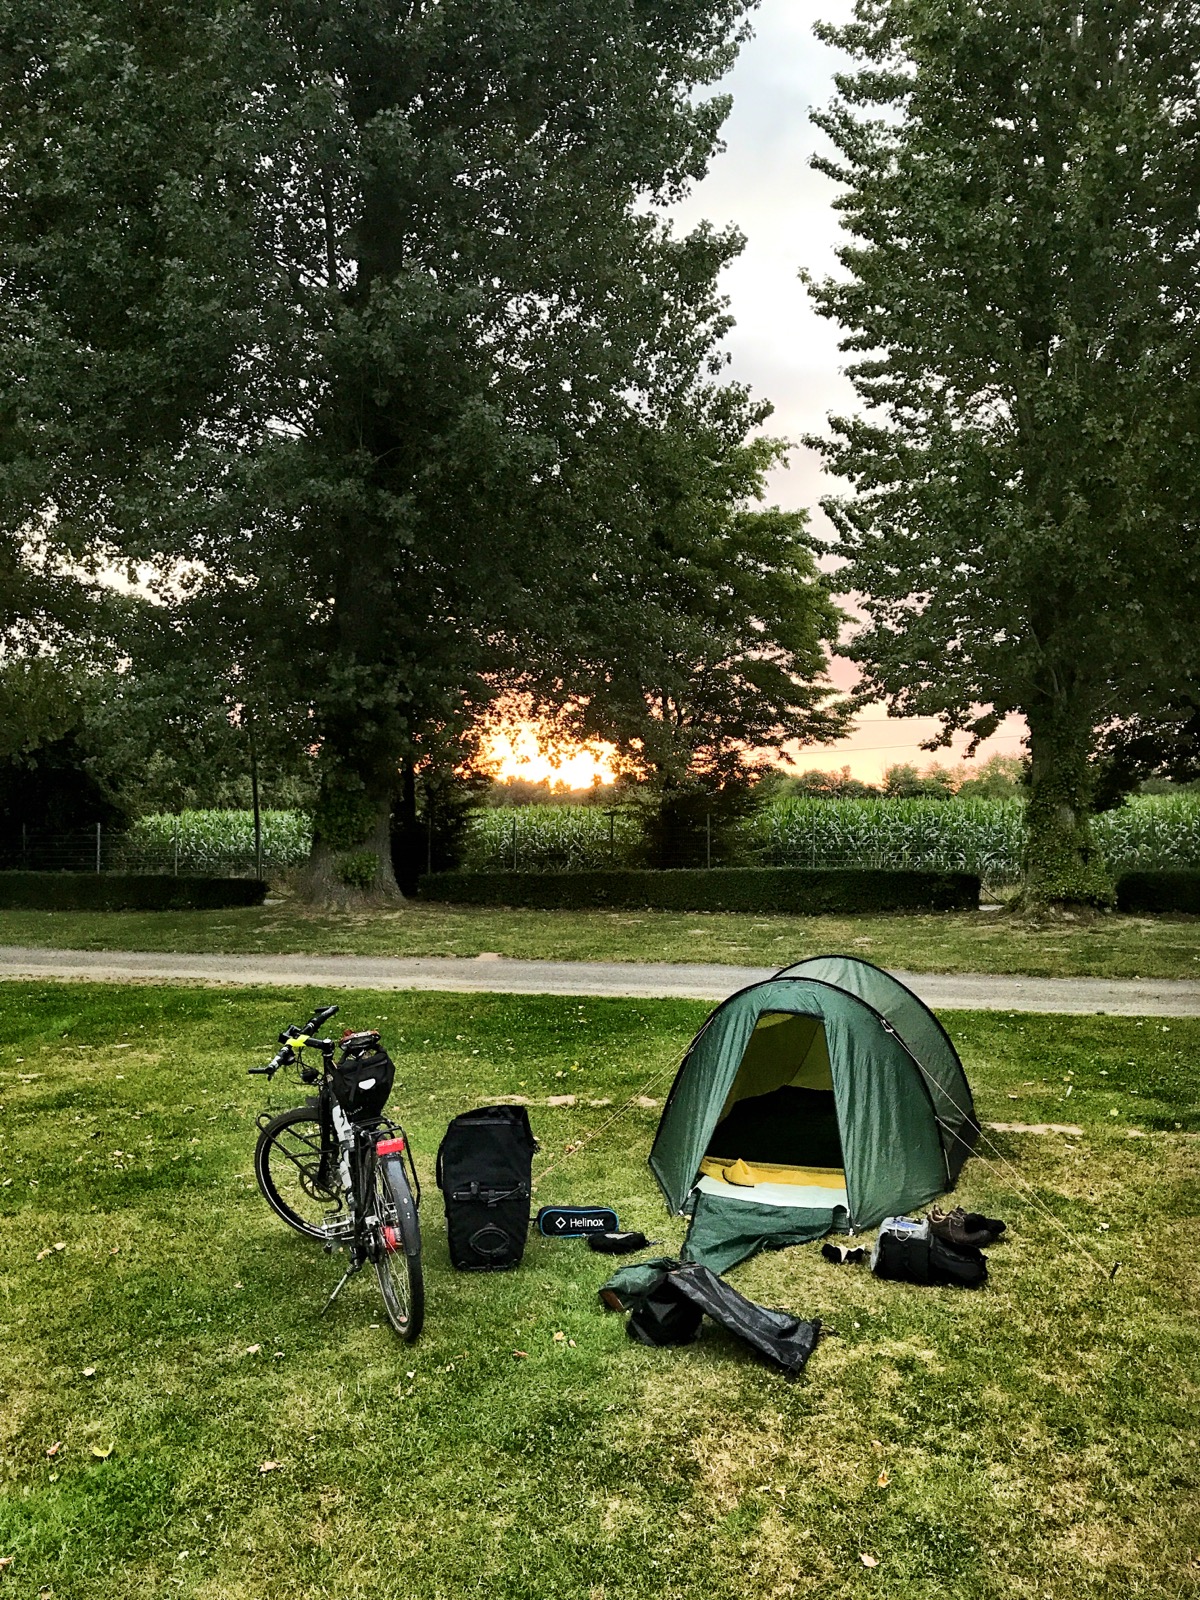 Rasenfläche eines Zeltplatzes, hinter Bäumen geht die Sonne auf. Ein grünes Tunnelzelt, ein Fahrrad und mehrere Packtaschen.